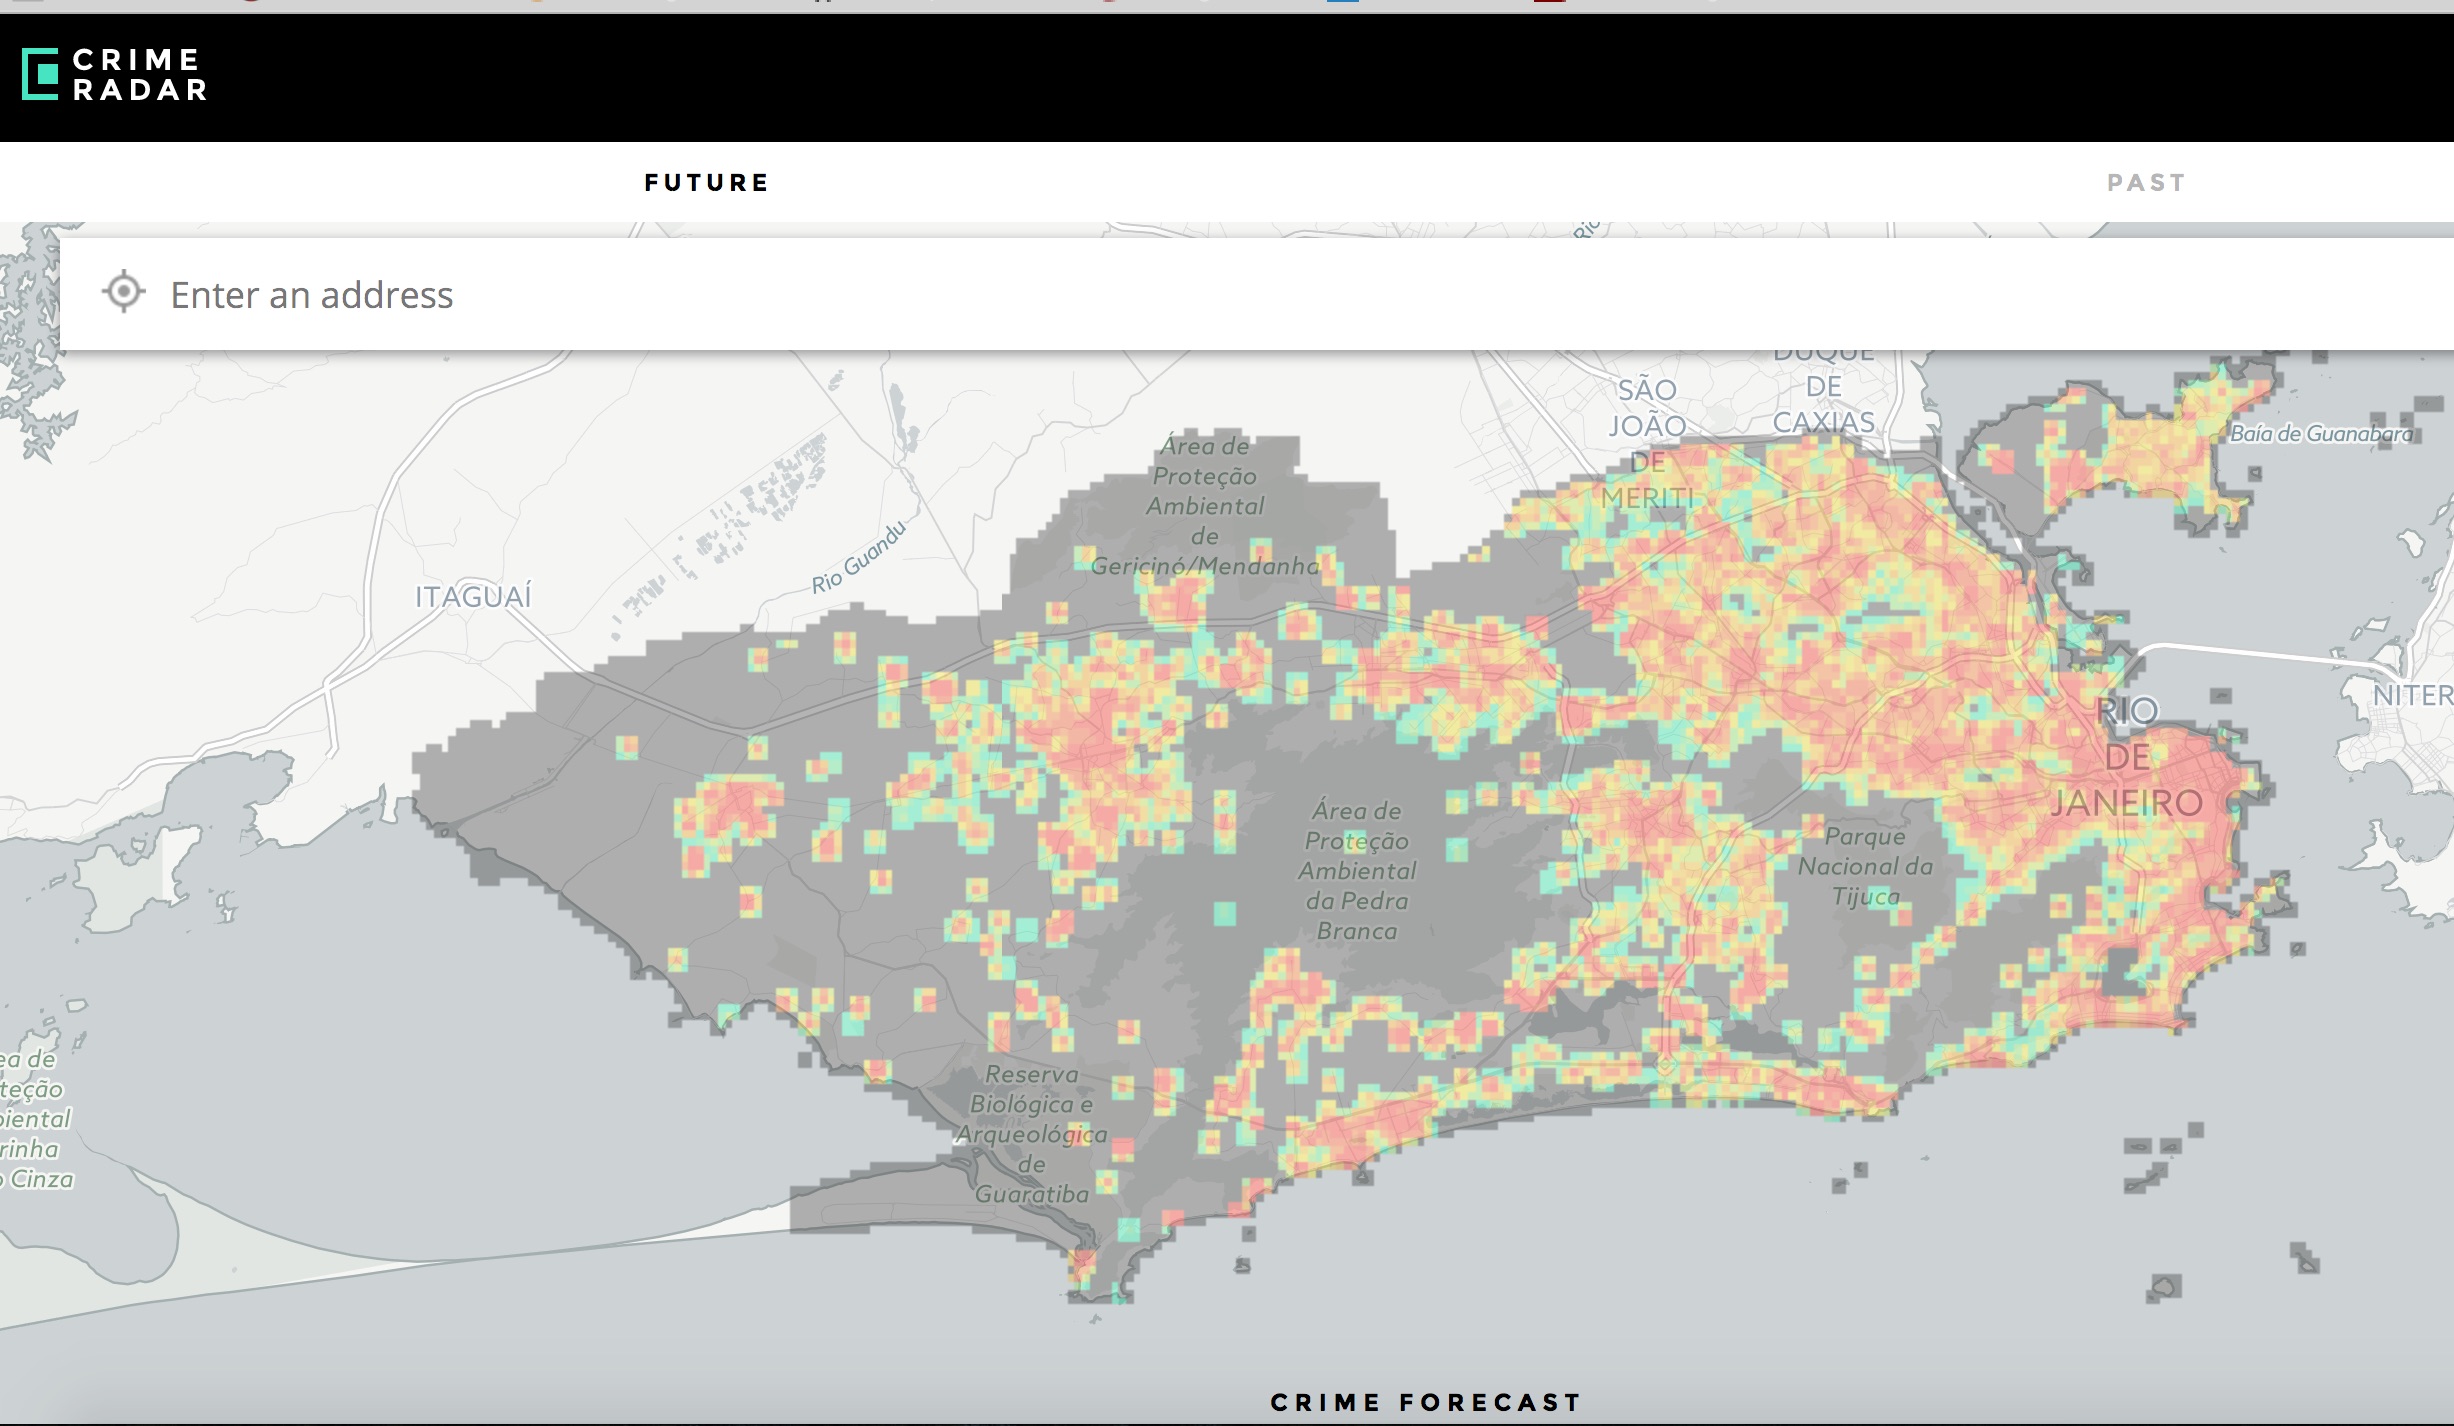 CrimeRadar_and_The_CrimeRadar_Crime-Forecasting_Tool_Maps__Pre-Crime__in_Rio_-_CityLab